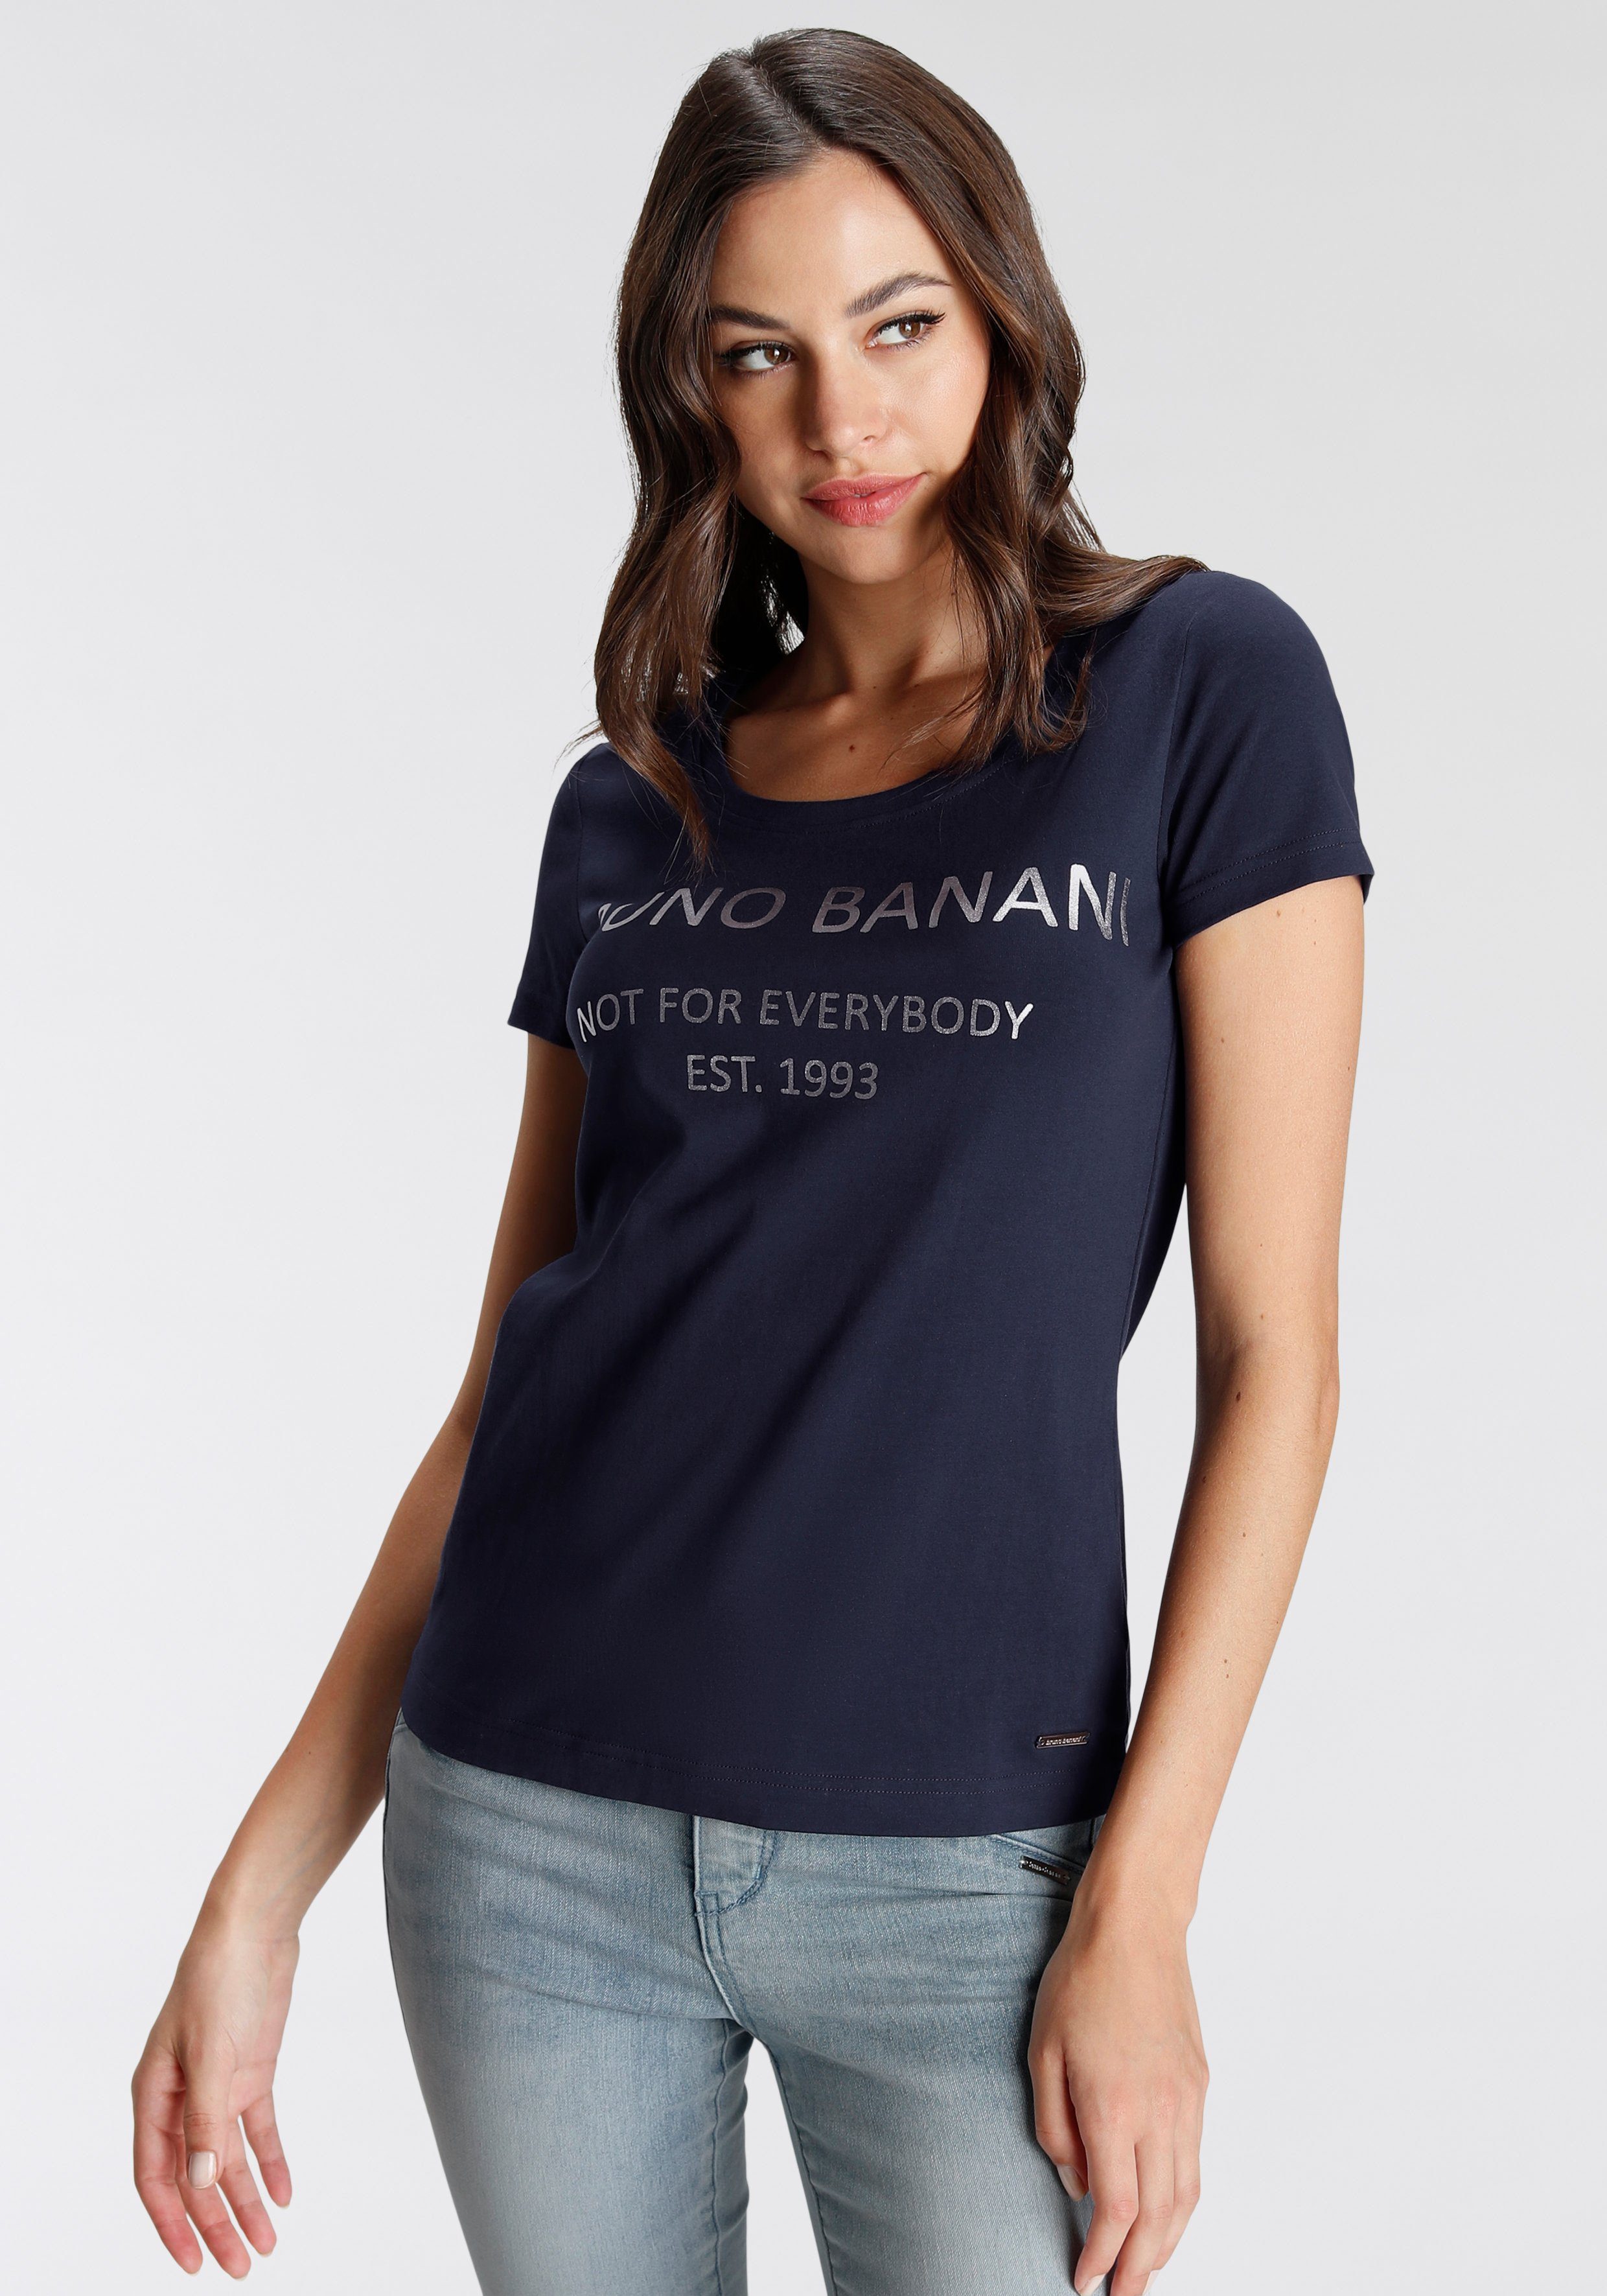 Bruno Banani T-Shirt mit goldfarbenem Logodruck NEUE marine KOLLEKTION